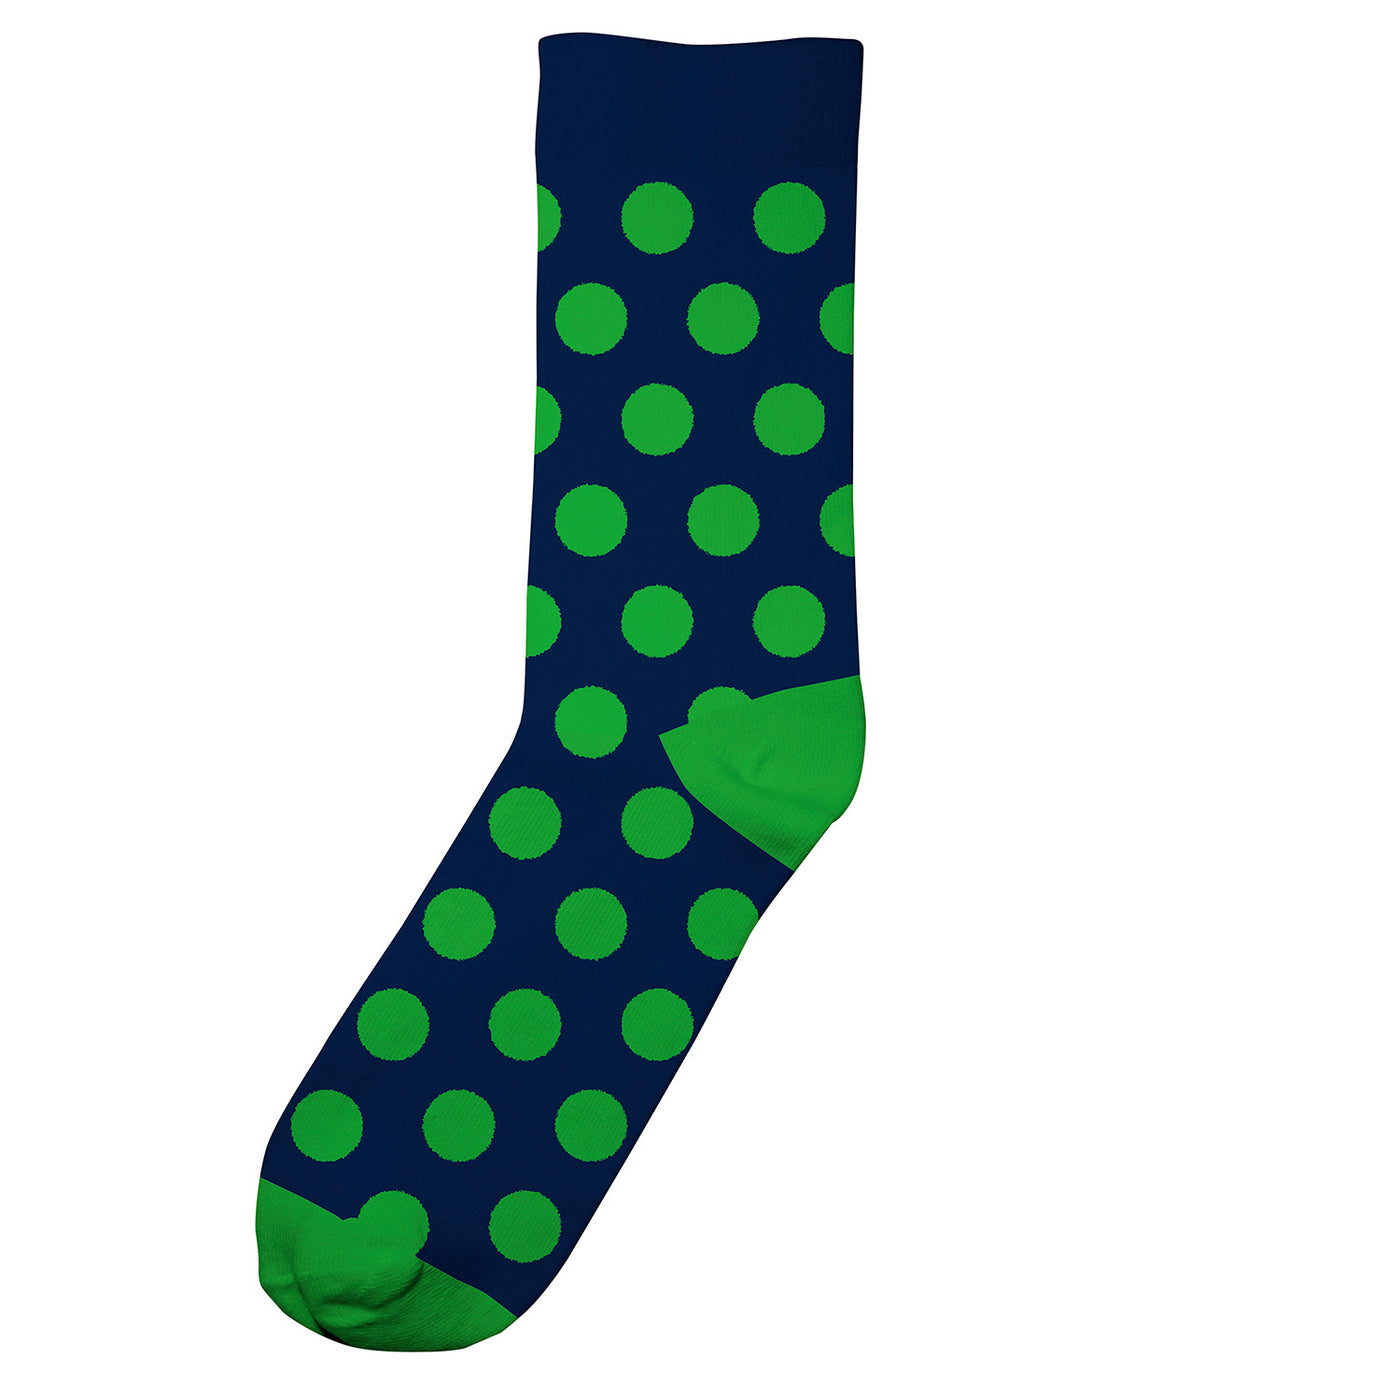 Dedicated - Socks Sigtuna Dots Navy Blau. Socken. Nachhaltige Kleidung für Männer. Bio, fair & vegan. green.in.pieces